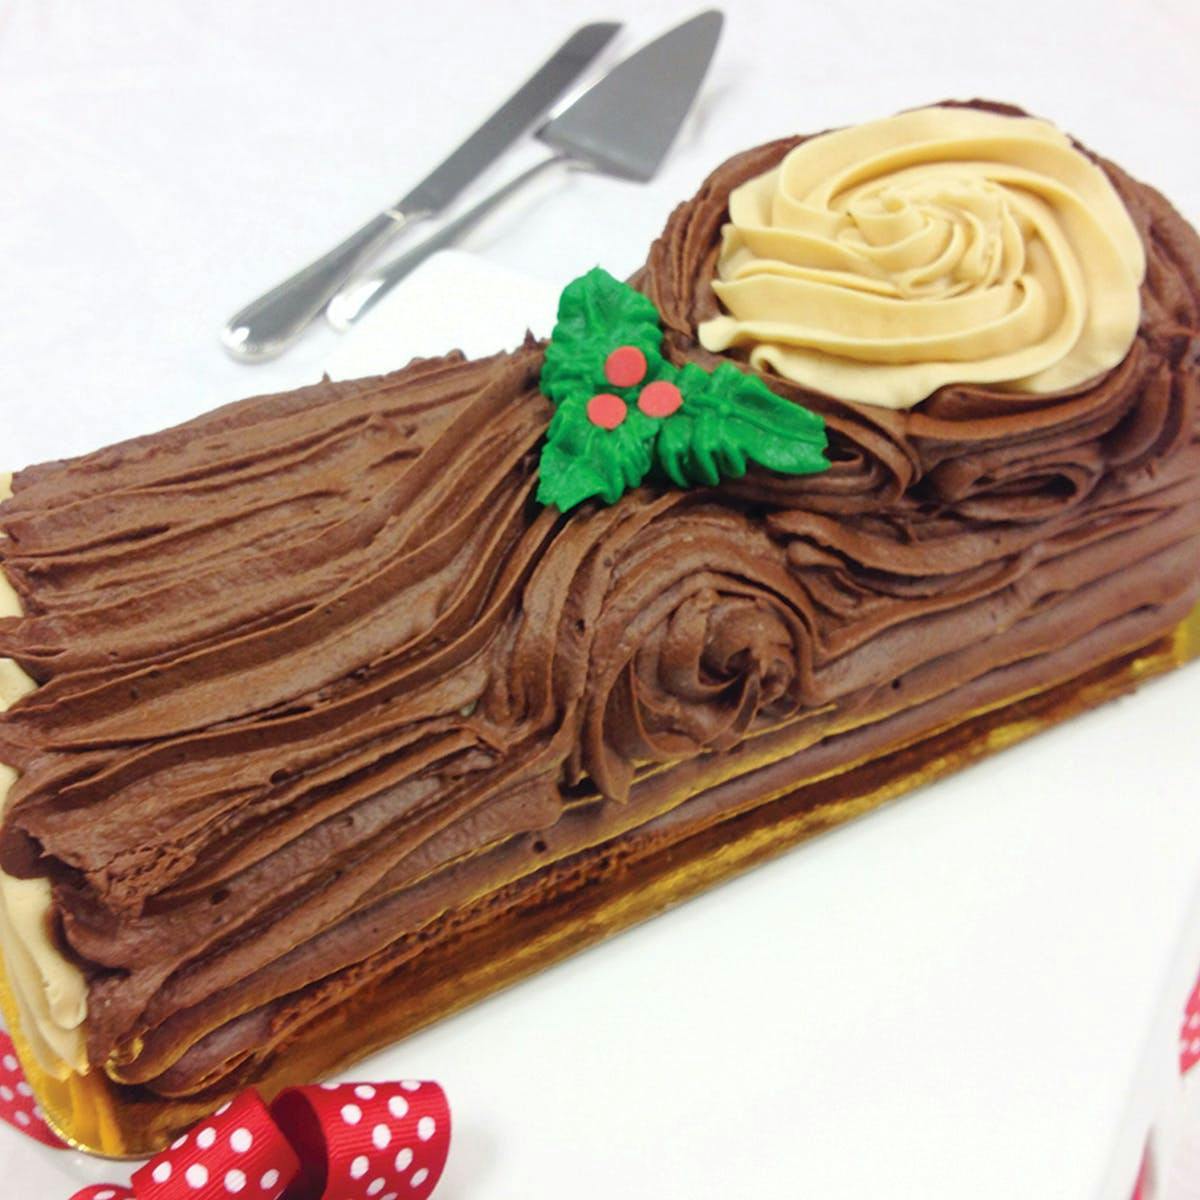 Carolina Christmas Yule Log Cake by Caroline's Cakes - Goldbelly